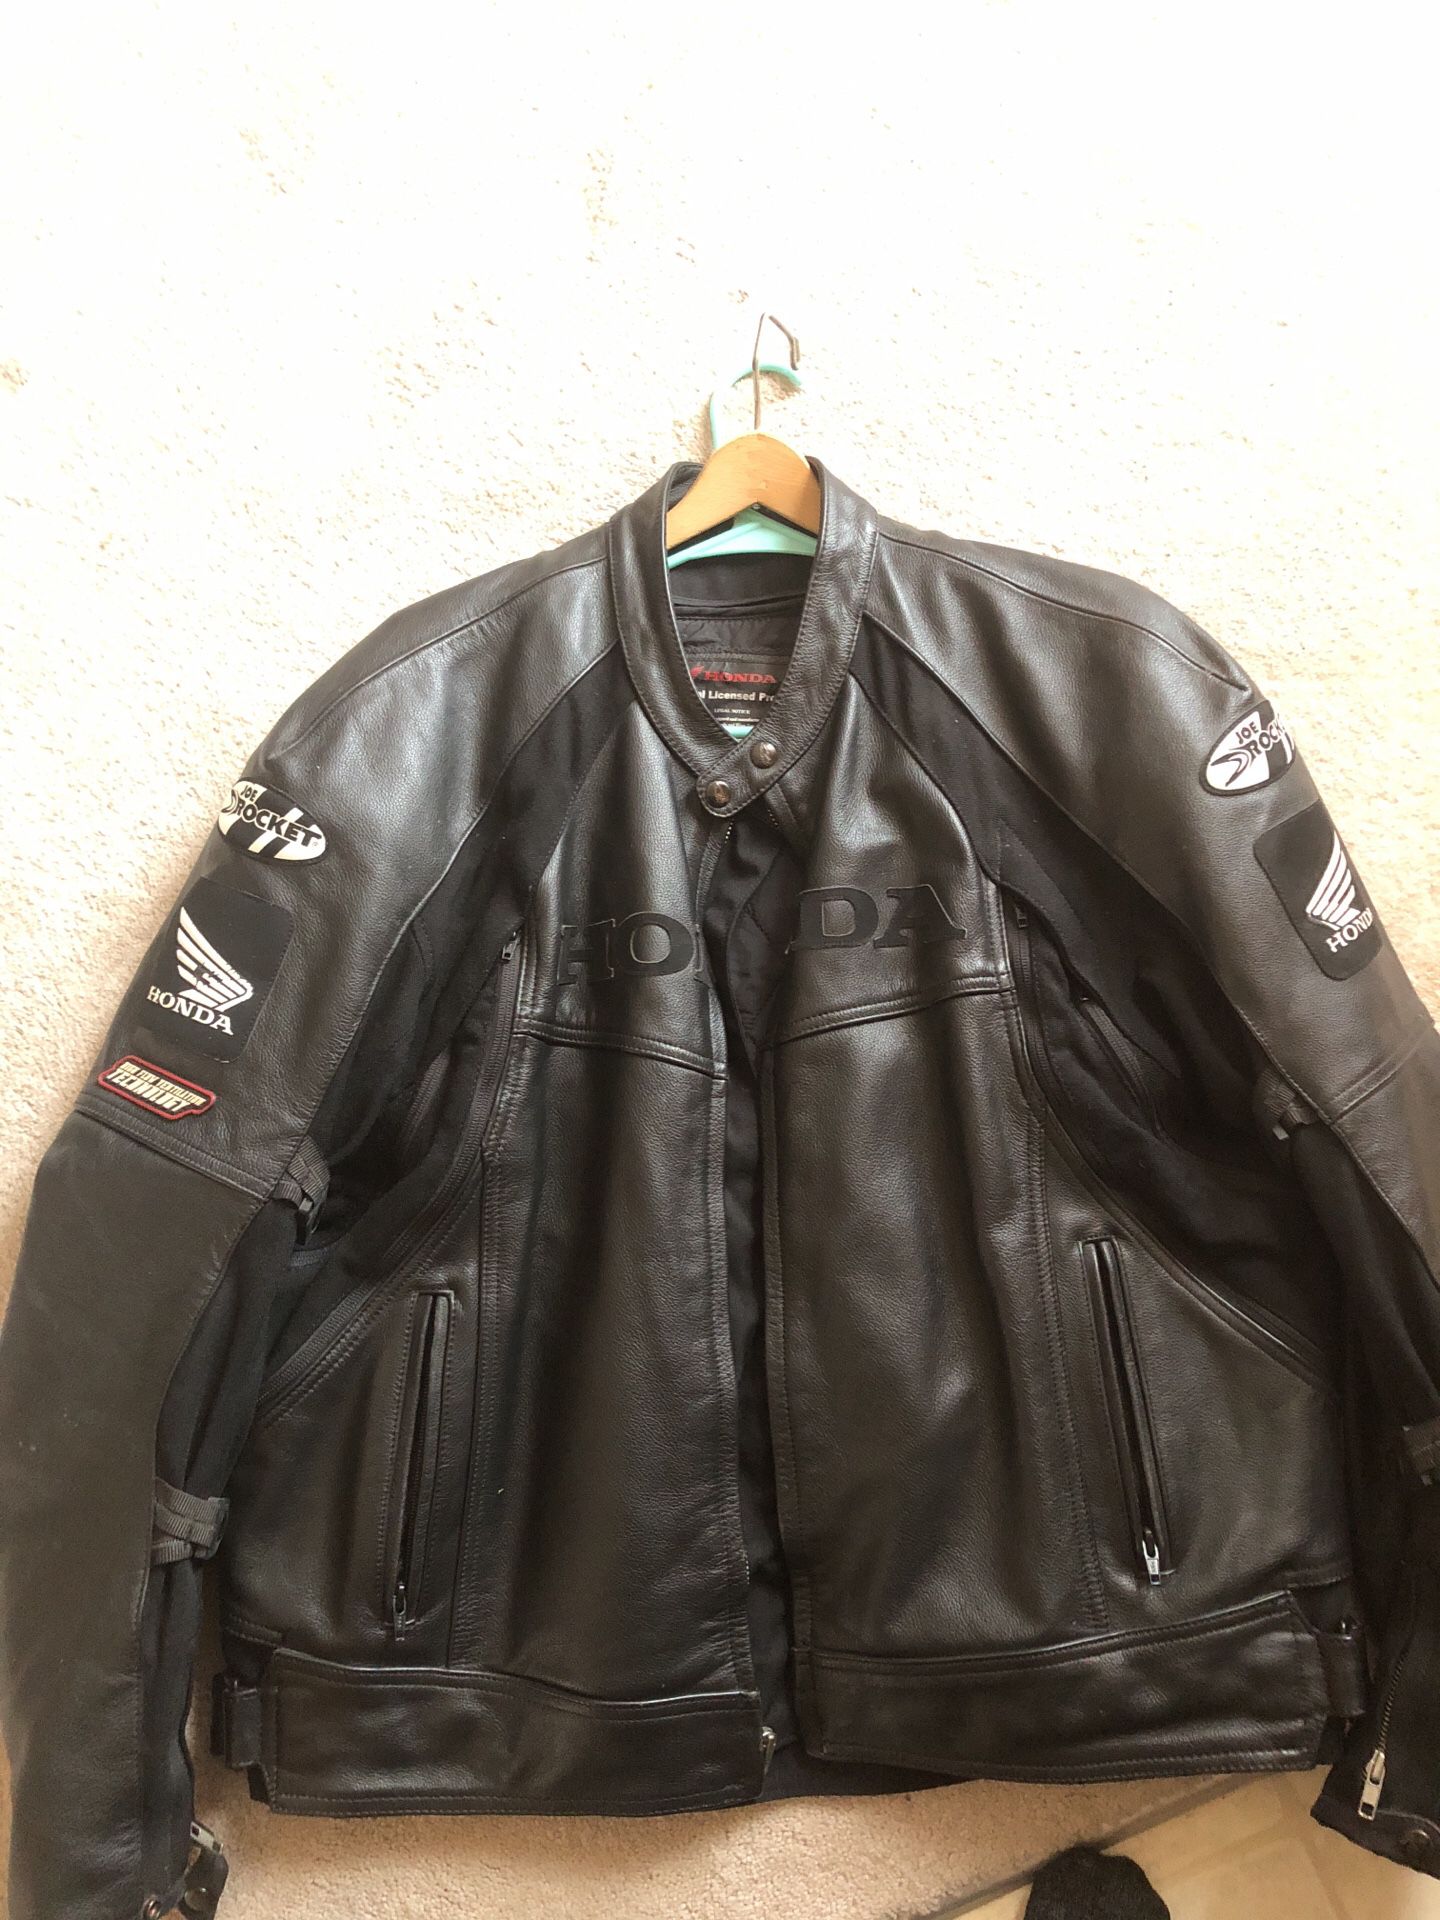 Honda leather motorcycle jacket